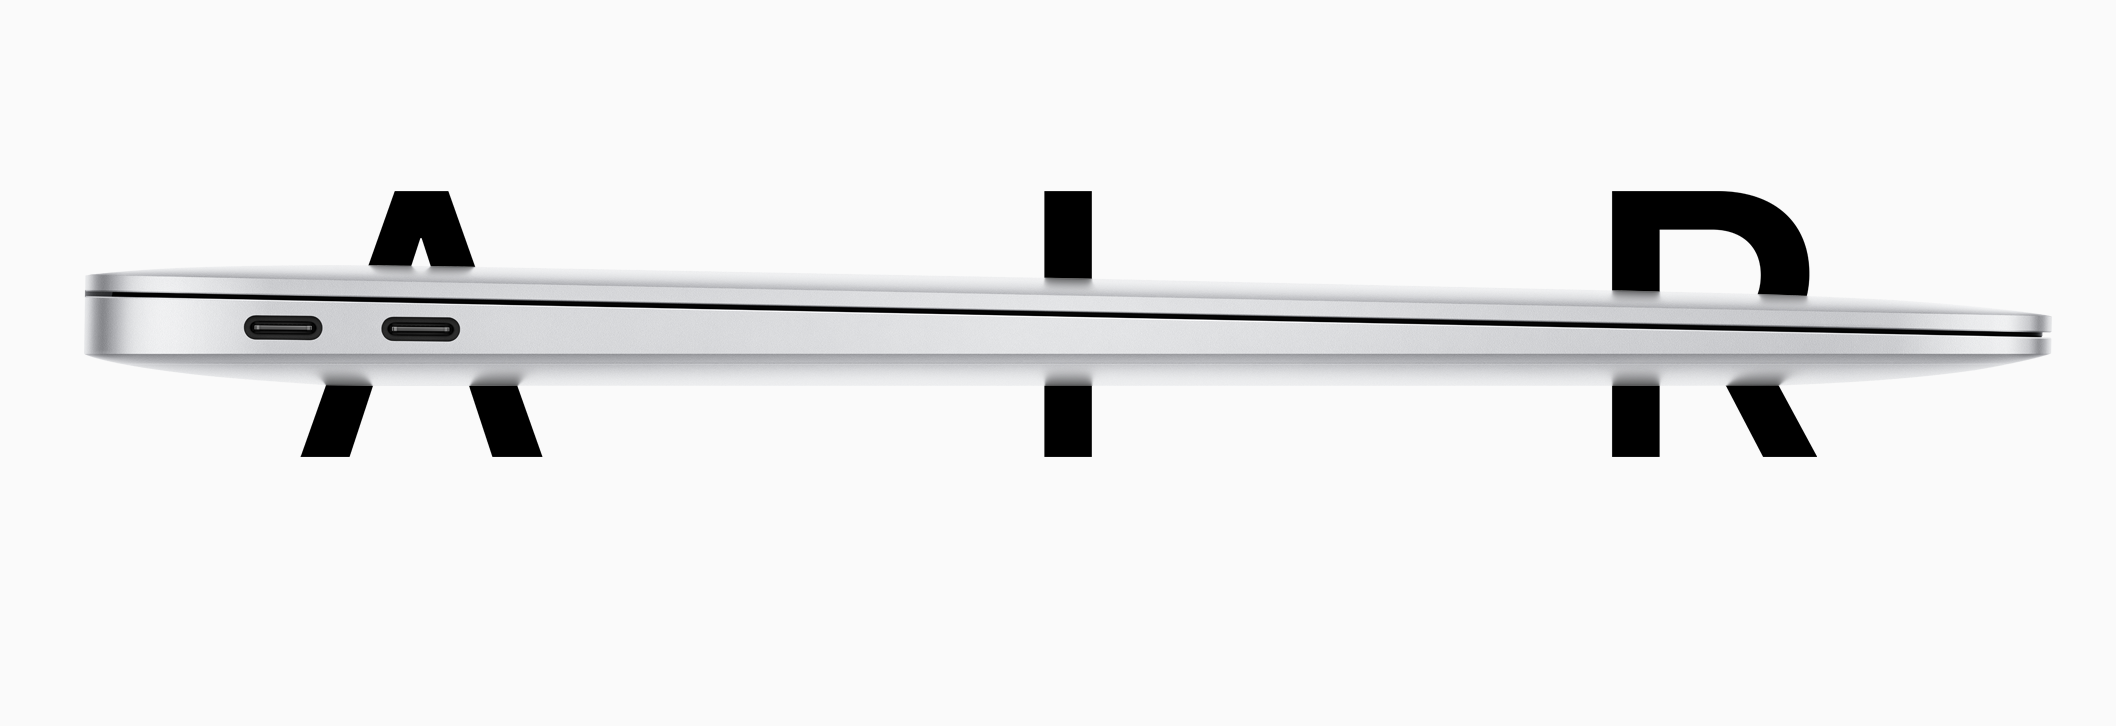 أعلنت Apple بهدوء عن جهاز MacBook Air الجديد: معالج ورسومات وسعر ولوحة مفاتيح أفضل!